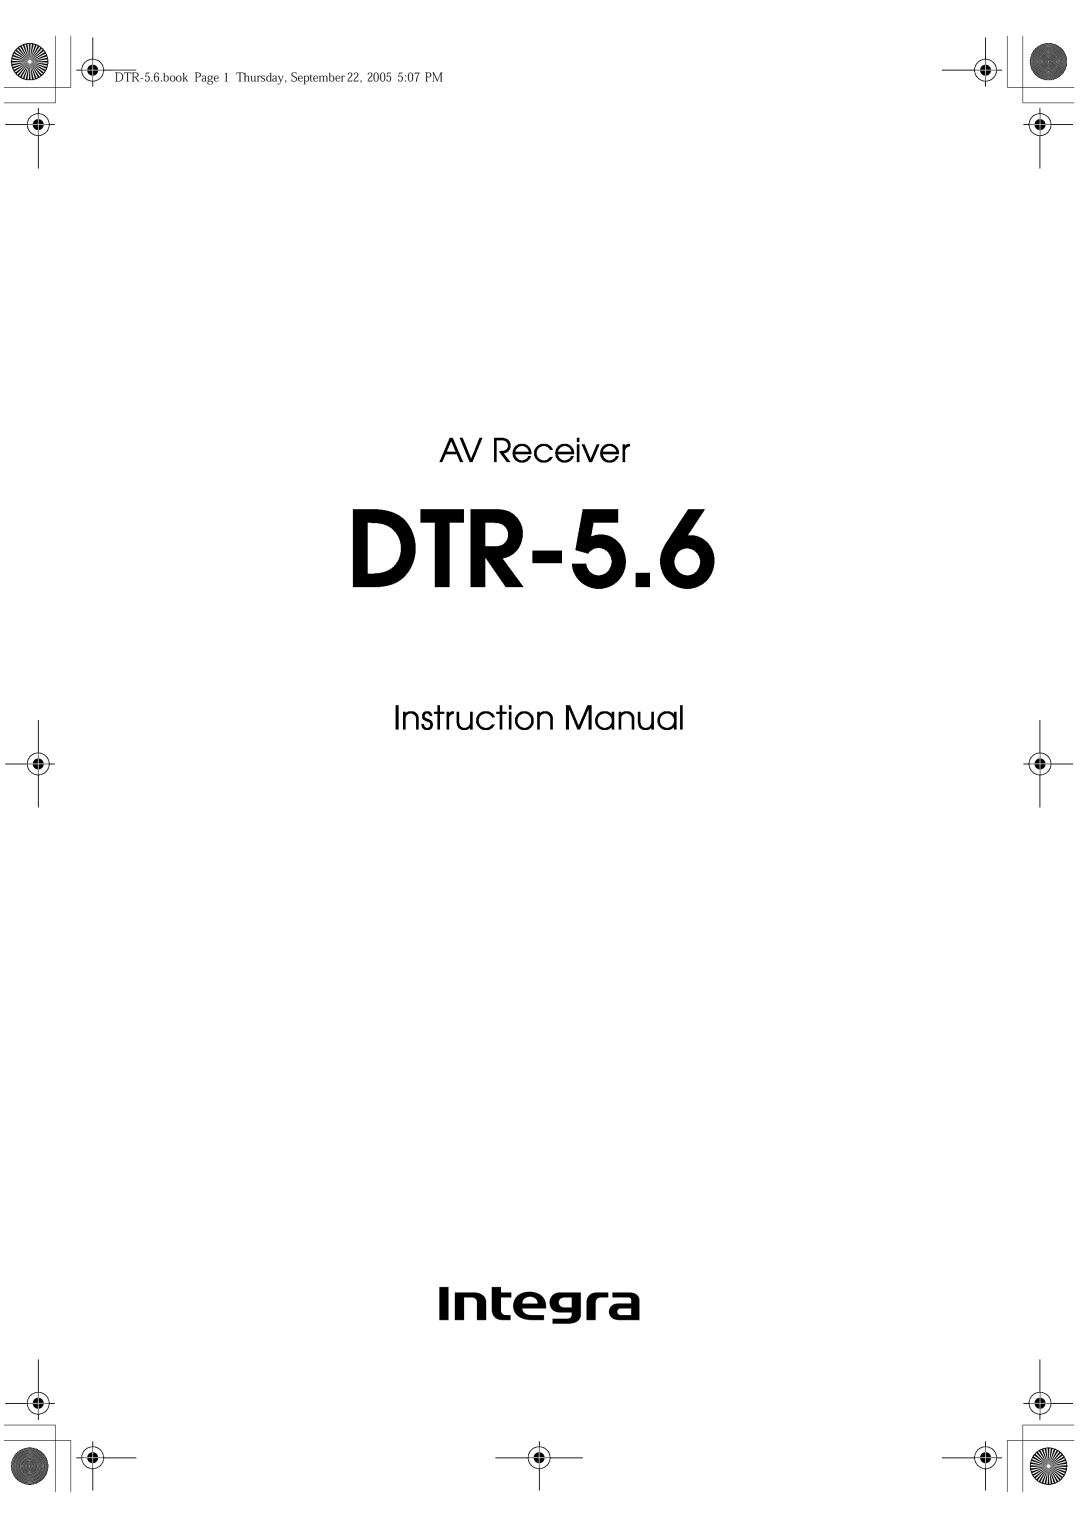 Integra DTR-5.6 instruction manual AV Receiver, Instruction Manual 